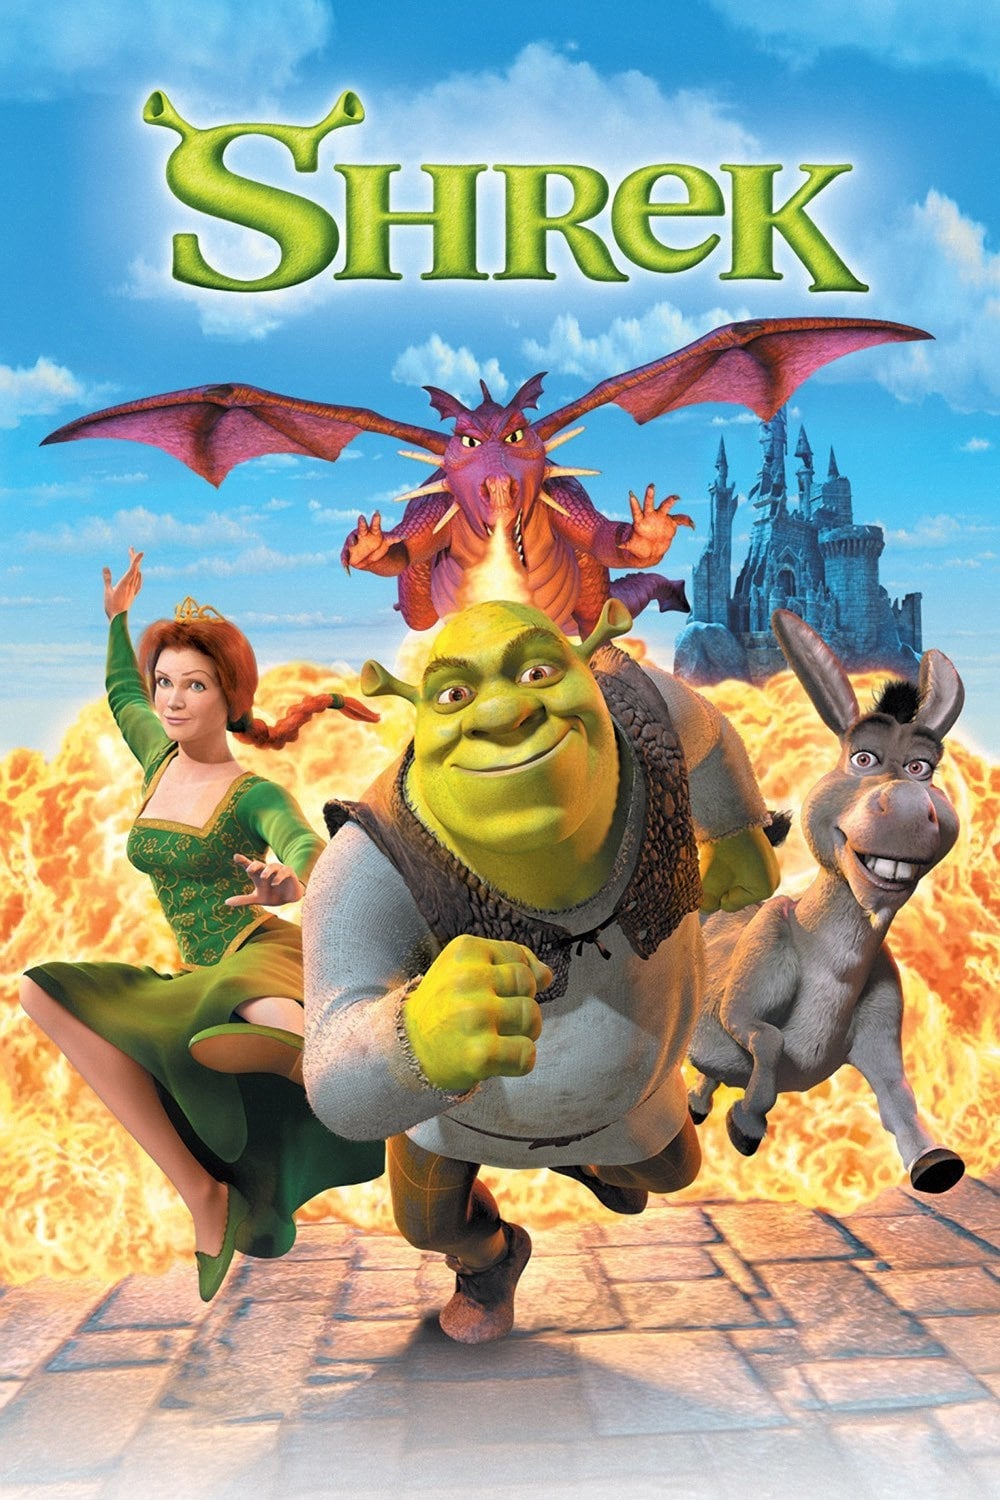 Asno de Shrek  Shrek character, Shrek funny, Shrek